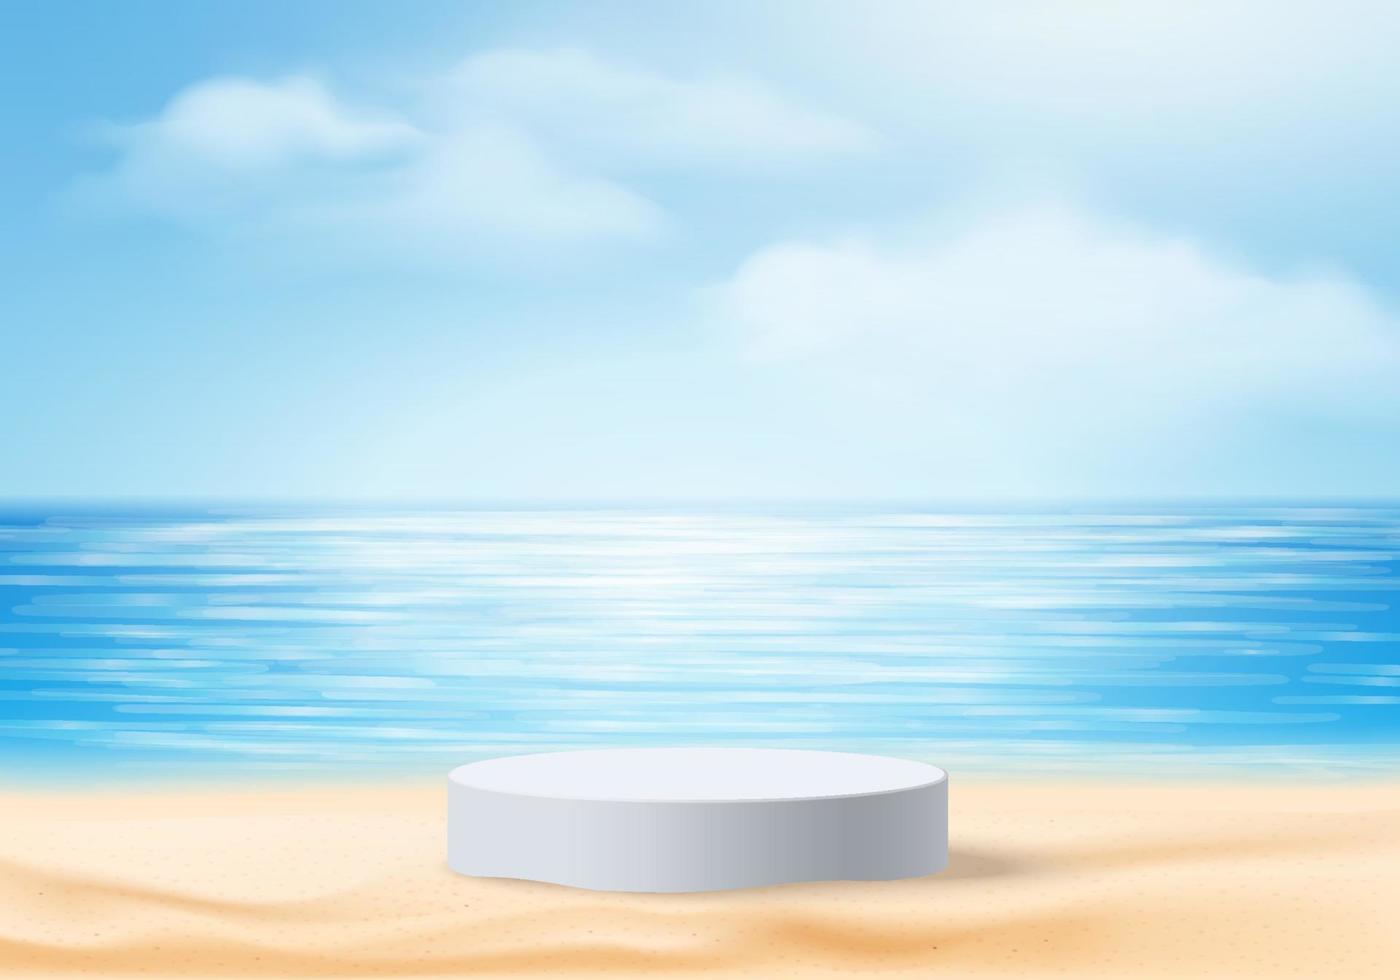 Escena del podio de la exhibición del producto del fondo del verano 3d con la plataforma de la nube. vector de fondo de verano render 3d en el océano, podio en el mar. stand mostrar producto cosmético mostrar cielo azul